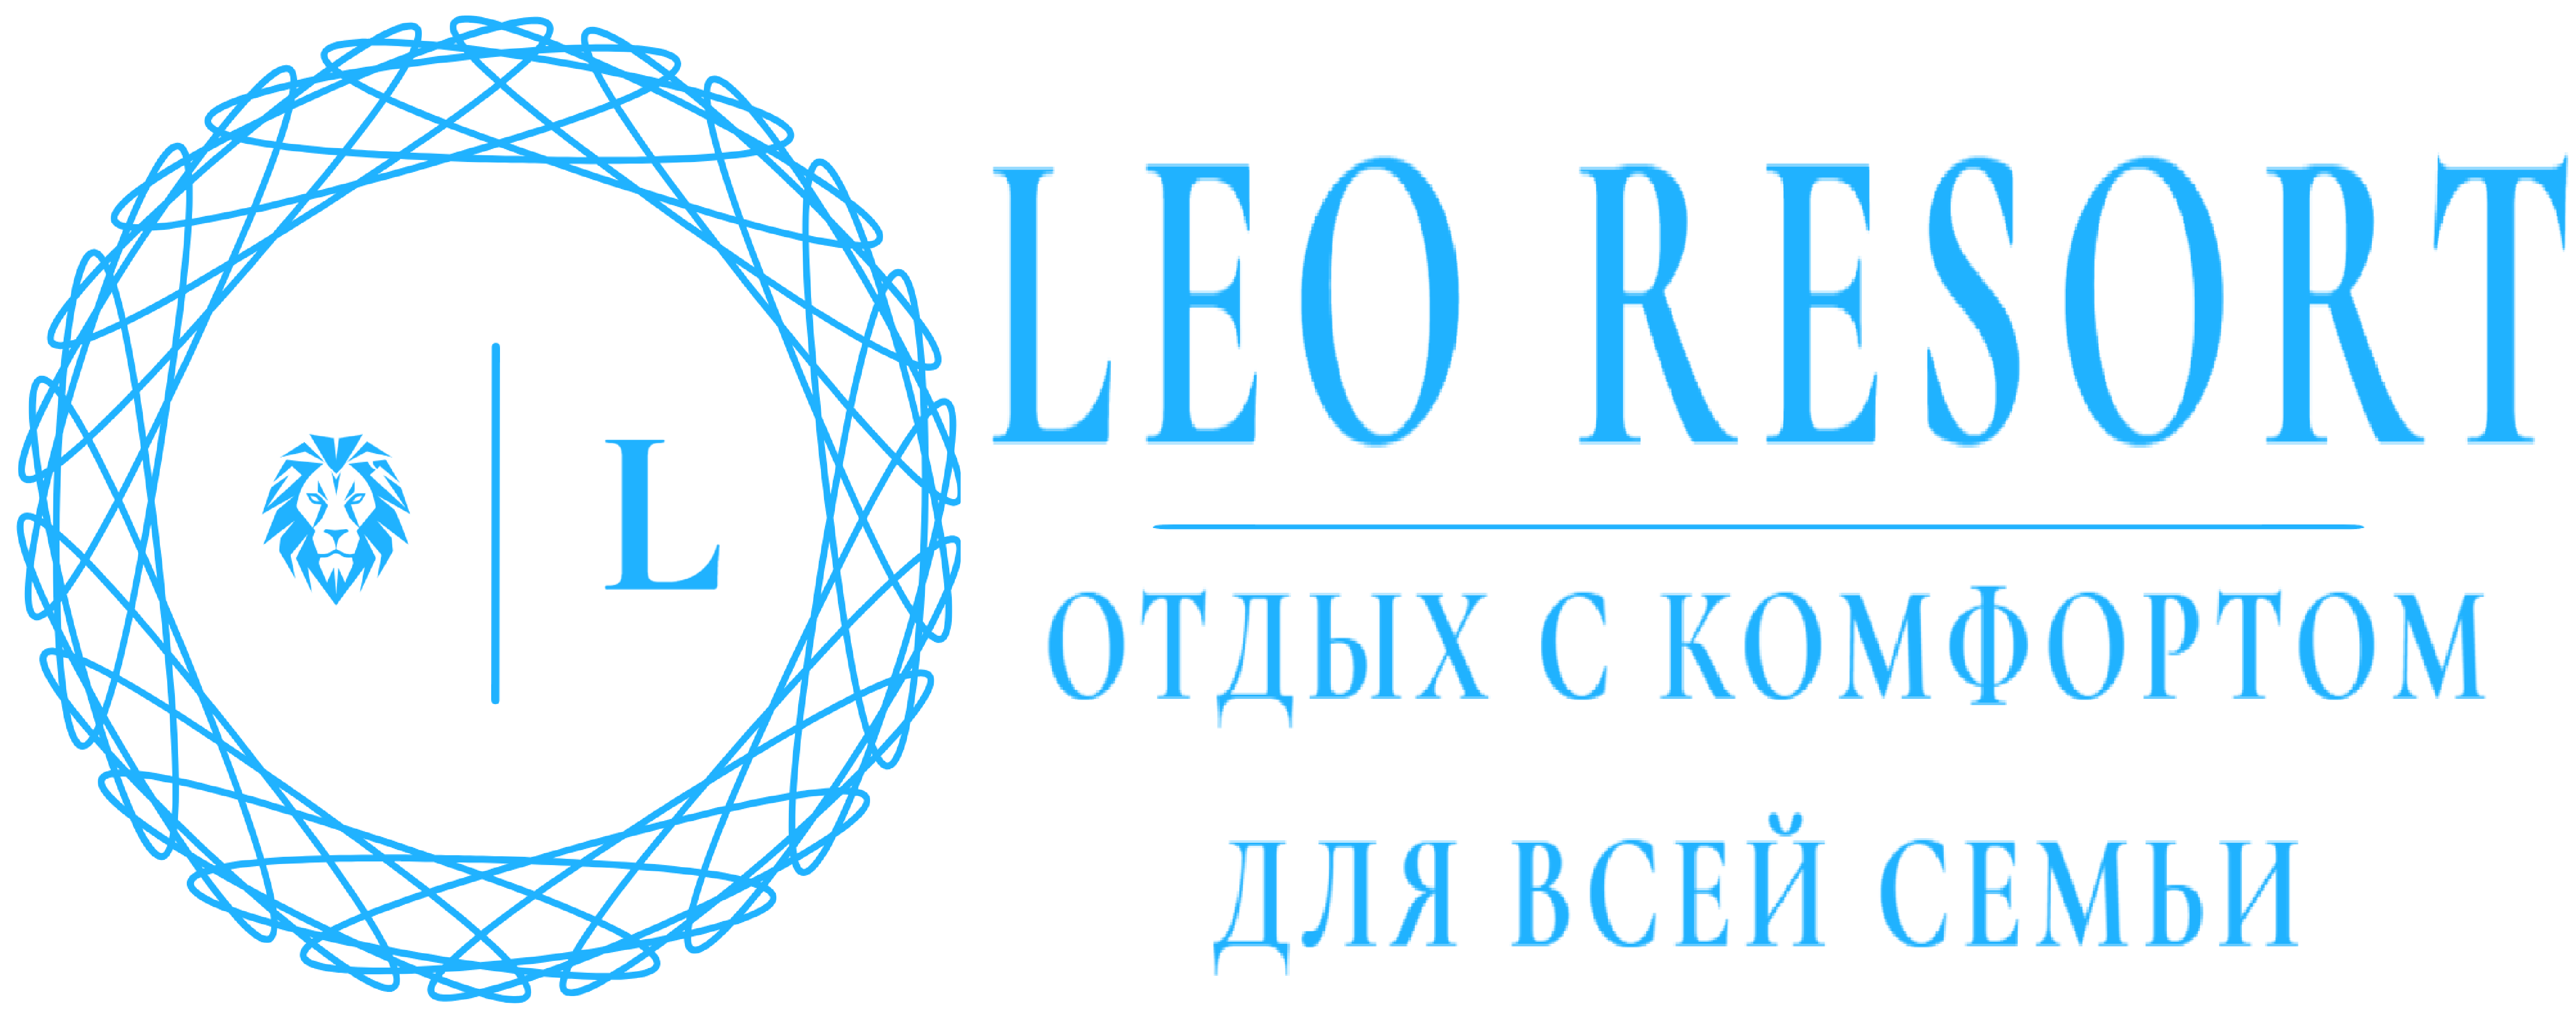 Leo Resort